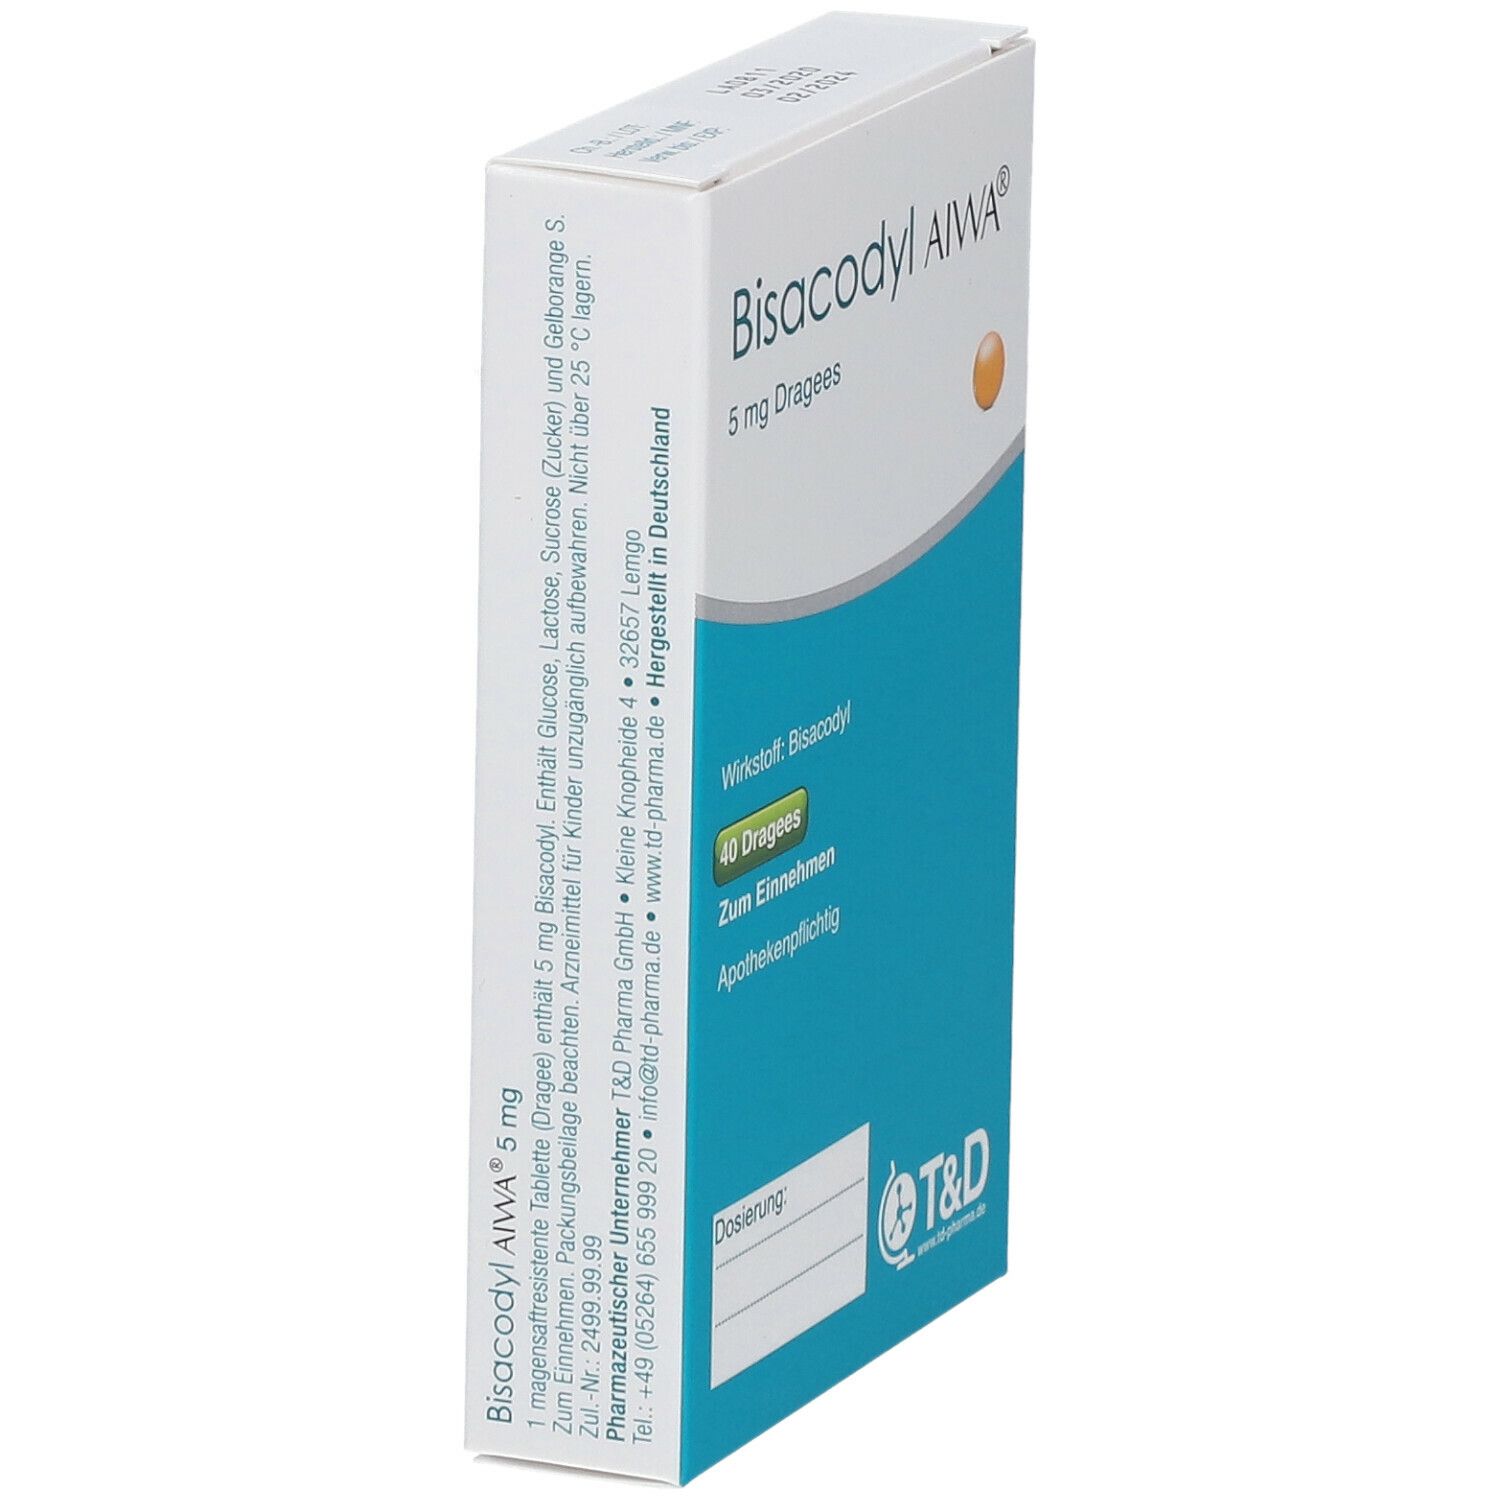 Bisacodyl AIWA® 5 mg magensaftresistente Tabletten